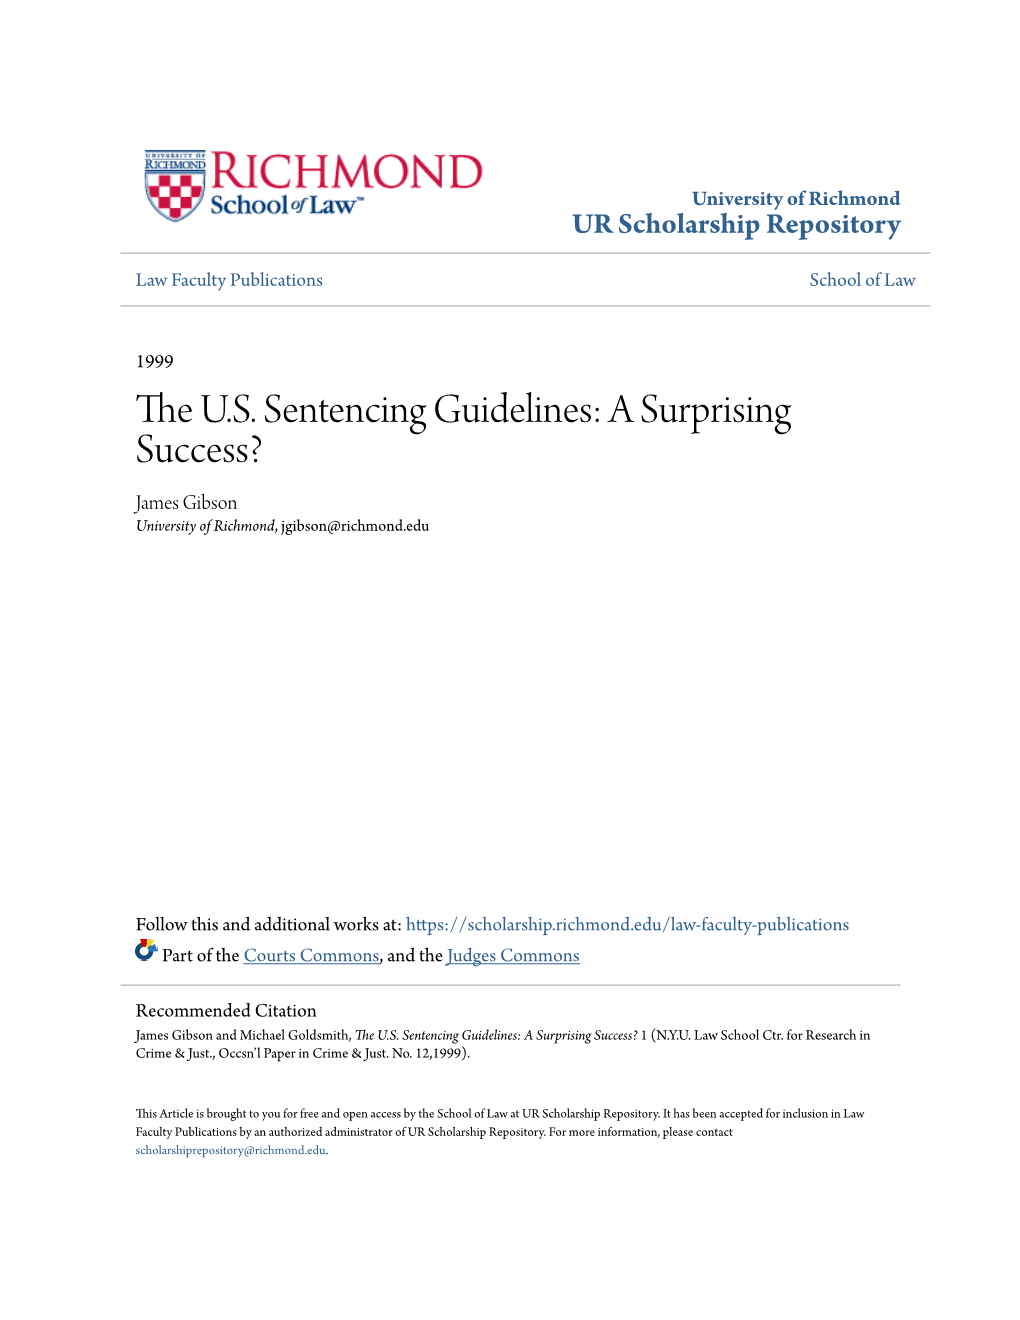 The U.S. Sentencing Guidelines: a Surprising Success? 1 (N.Y.U